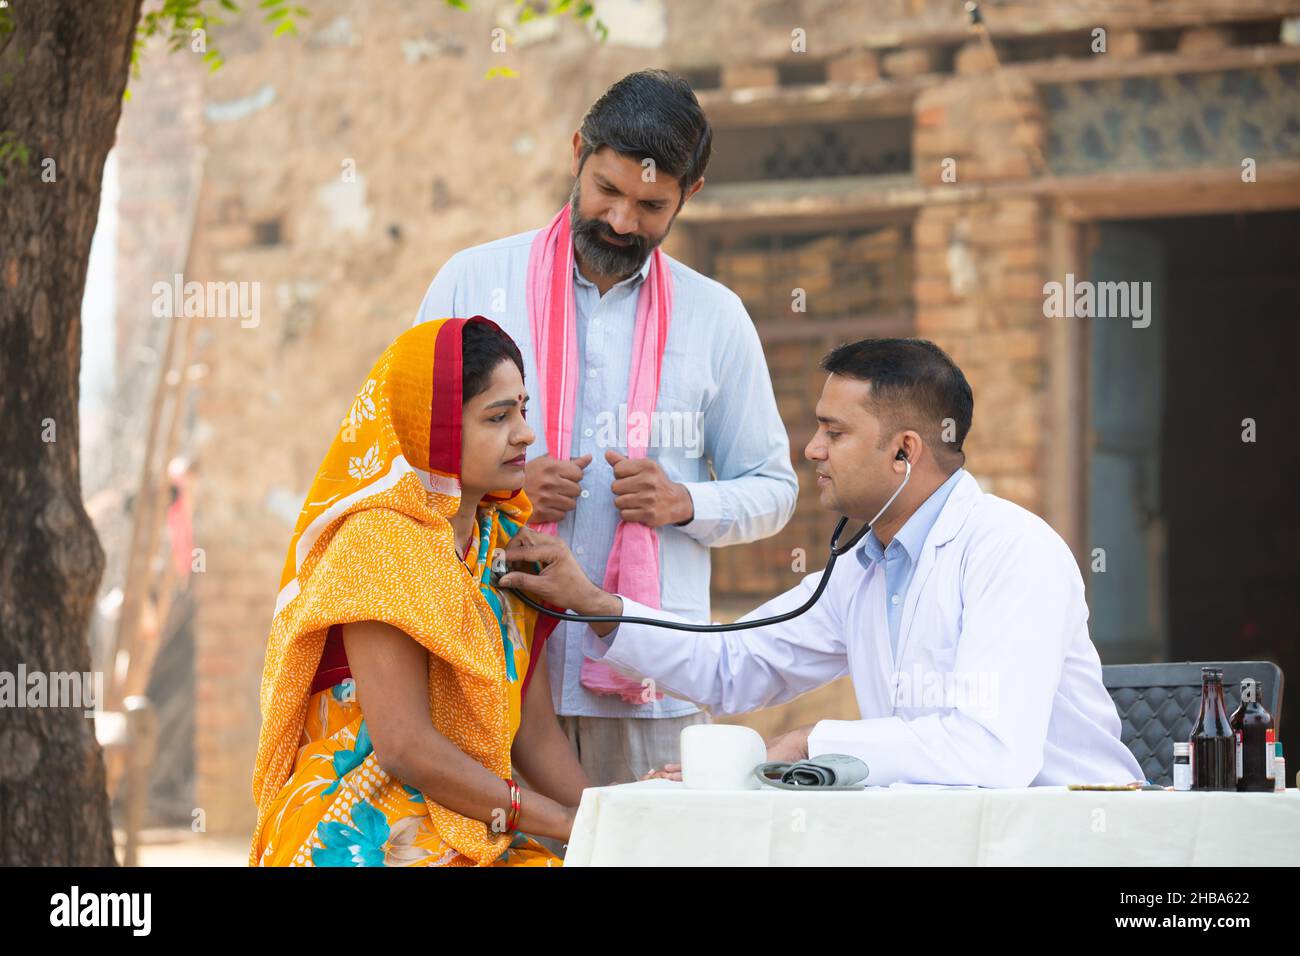 Medico indiano maschio con stetoscopio di controllo del battito cardiaco paziente o respiro al villaggio, donna che indossa sari con suo marito che ottiene esame da medico p Foto Stock